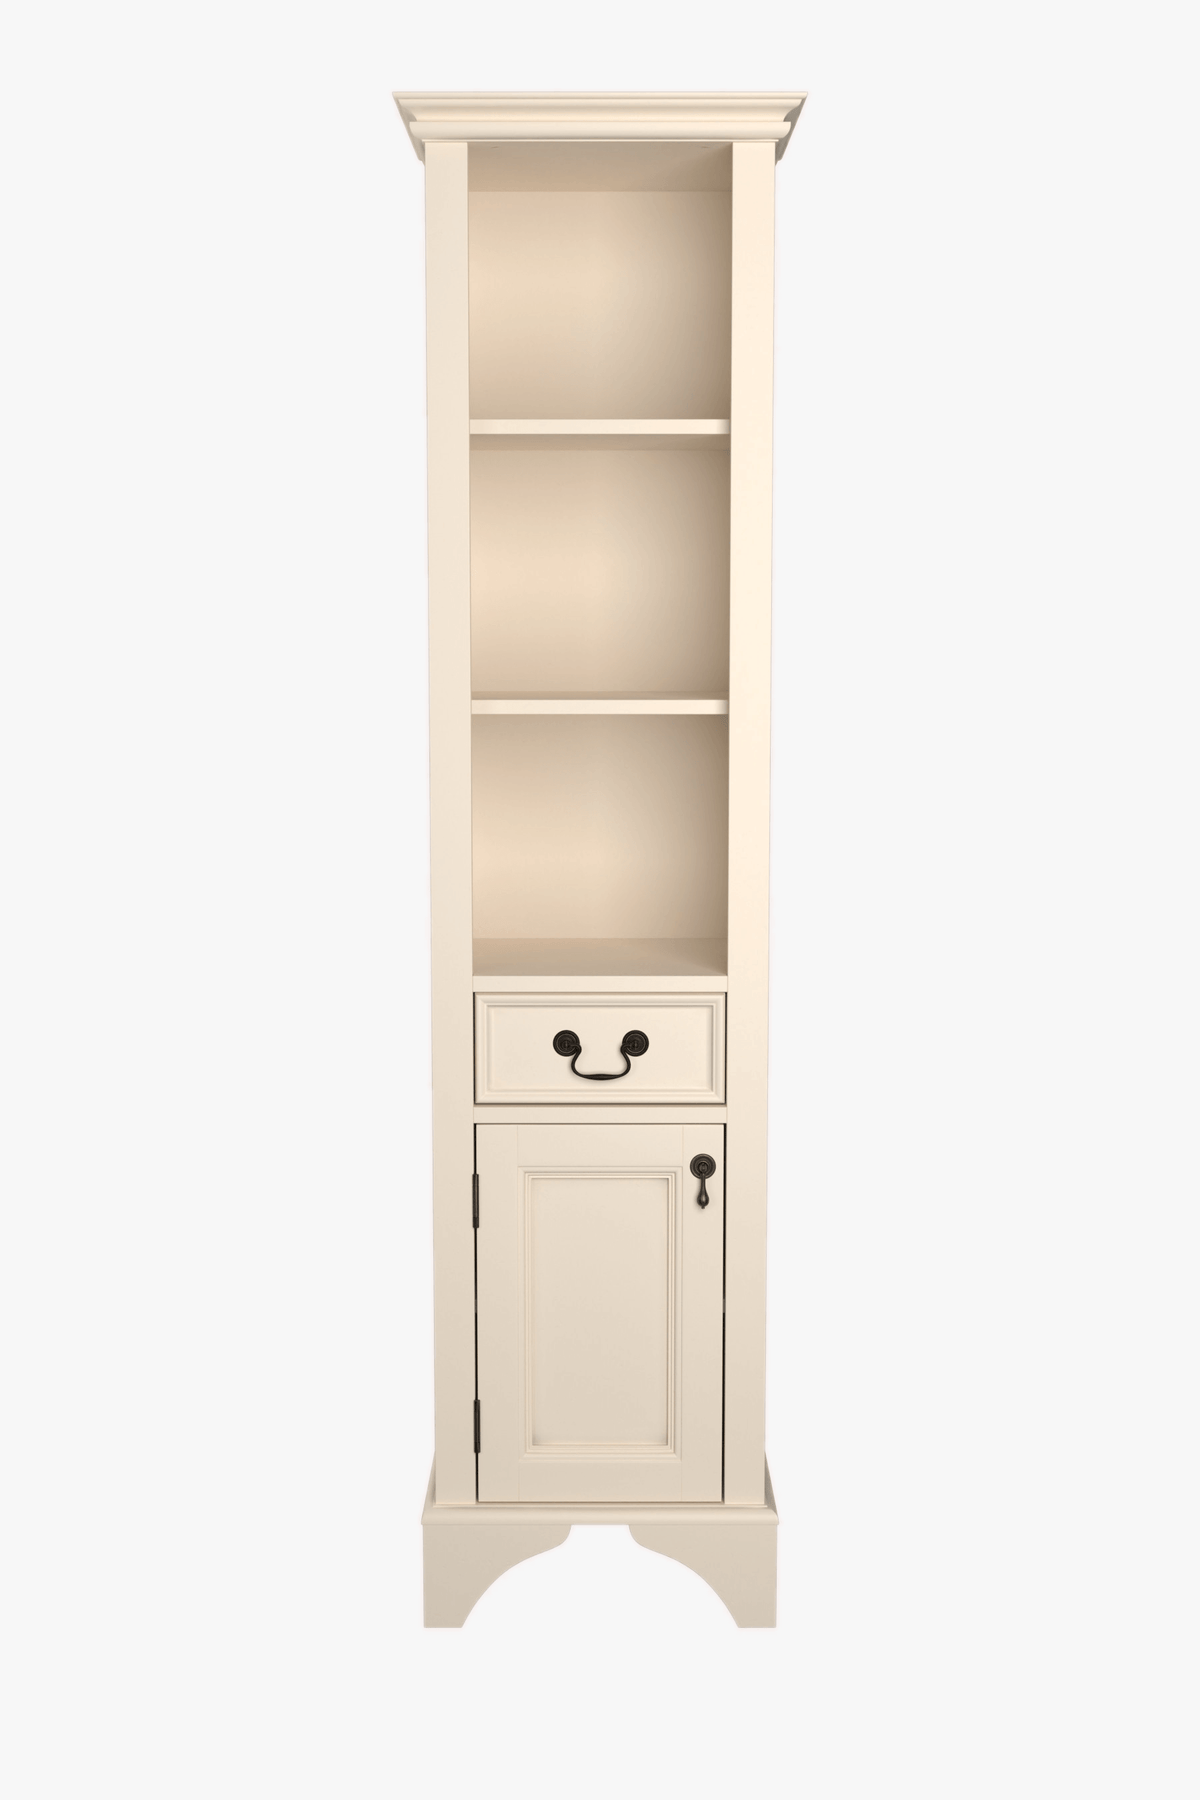 Clifton 1 Door Bathroom Storage Cabinet